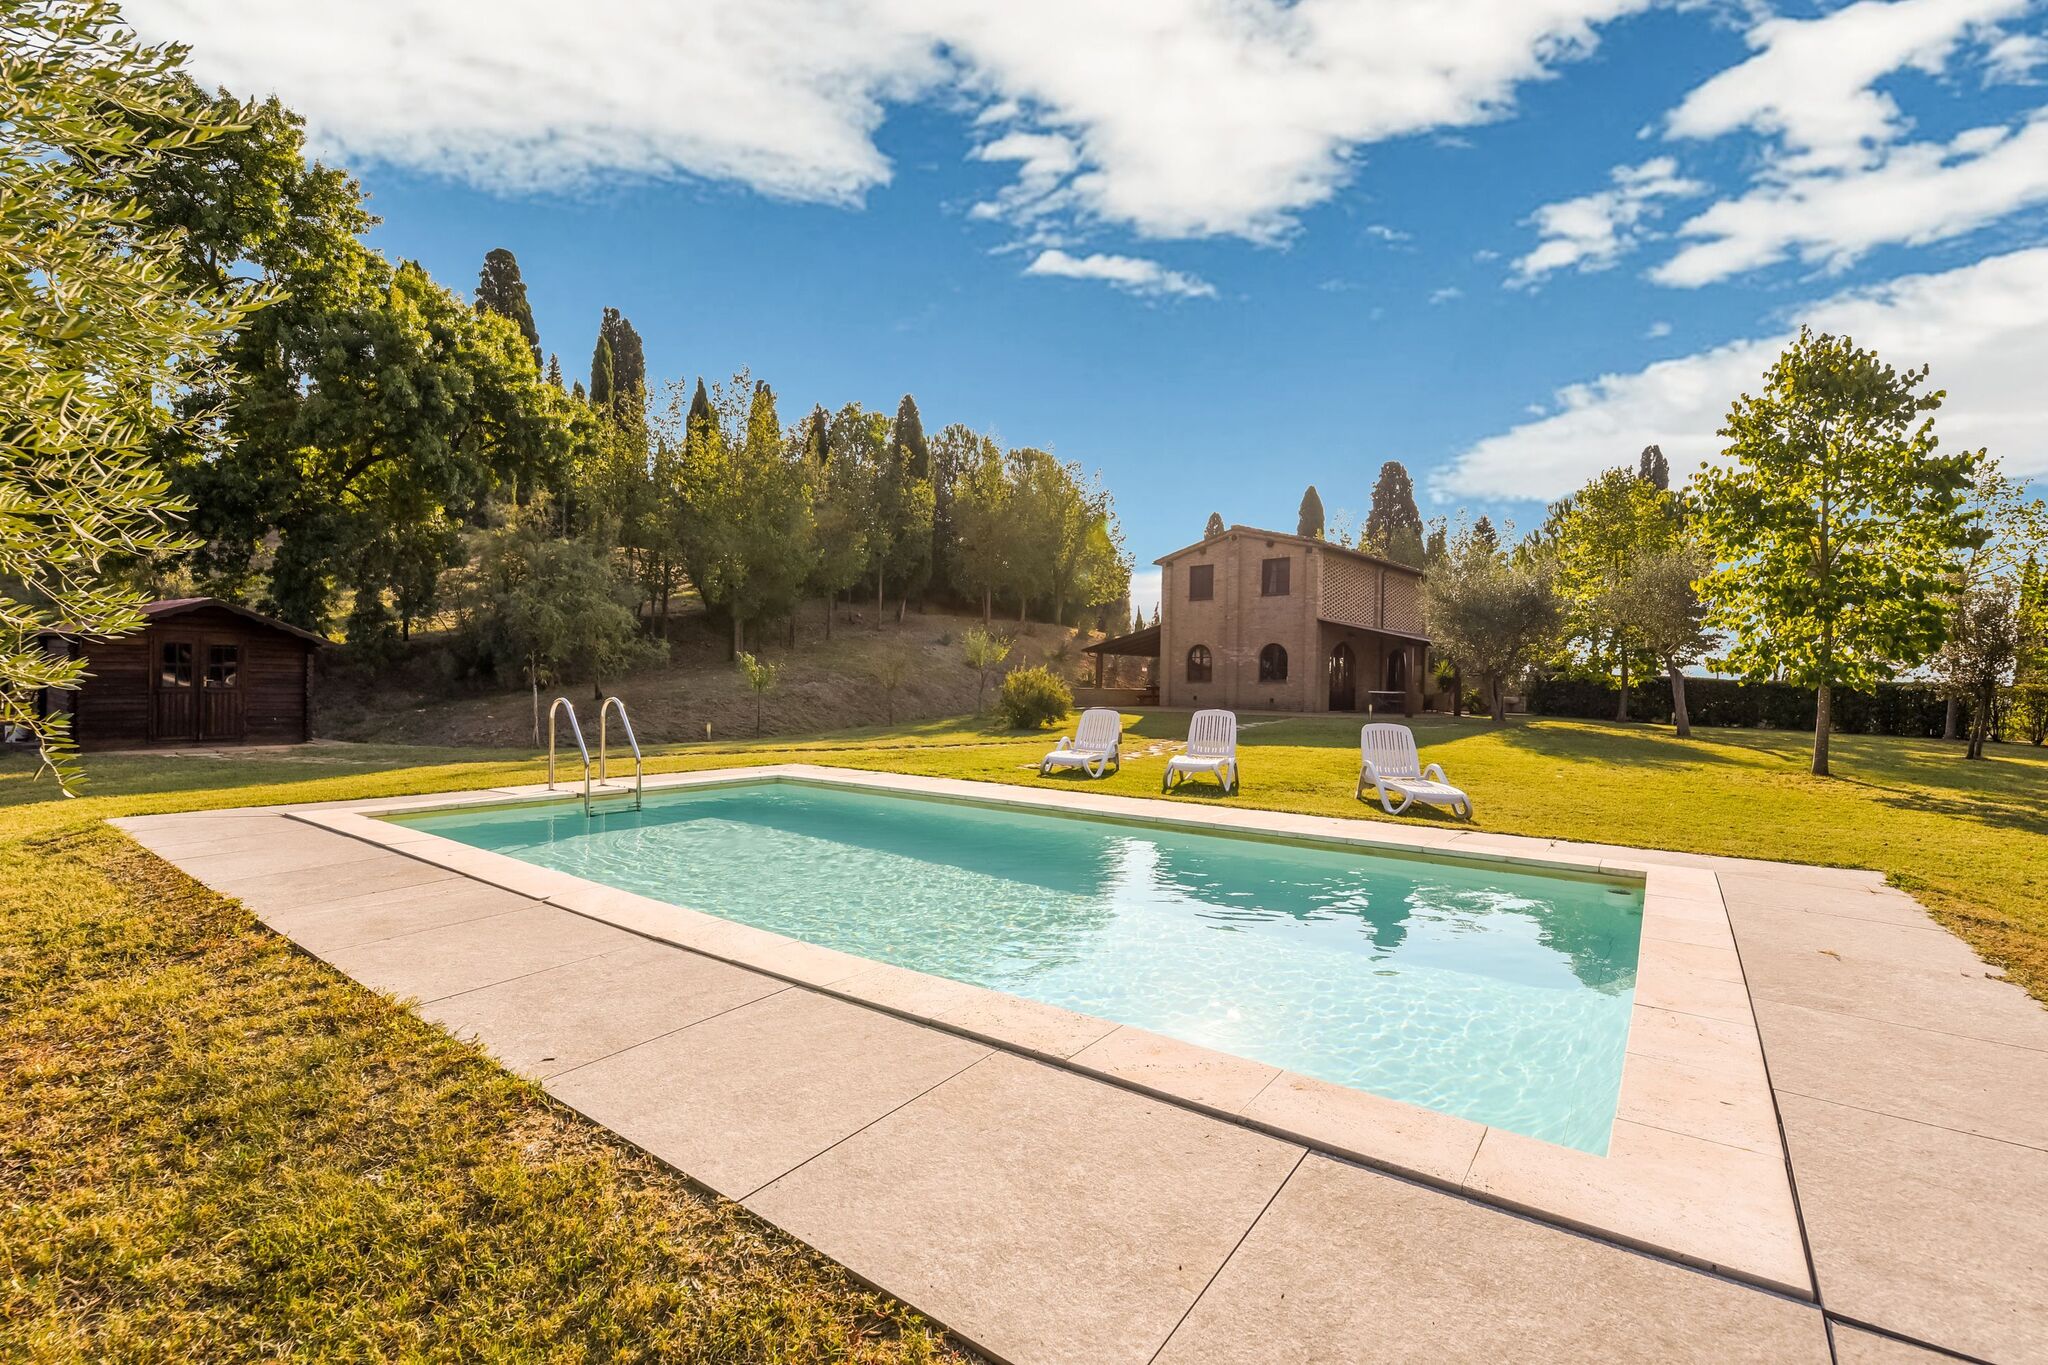 Charmante maison de vacances avec piscine privée et jardin, située près de Sienne